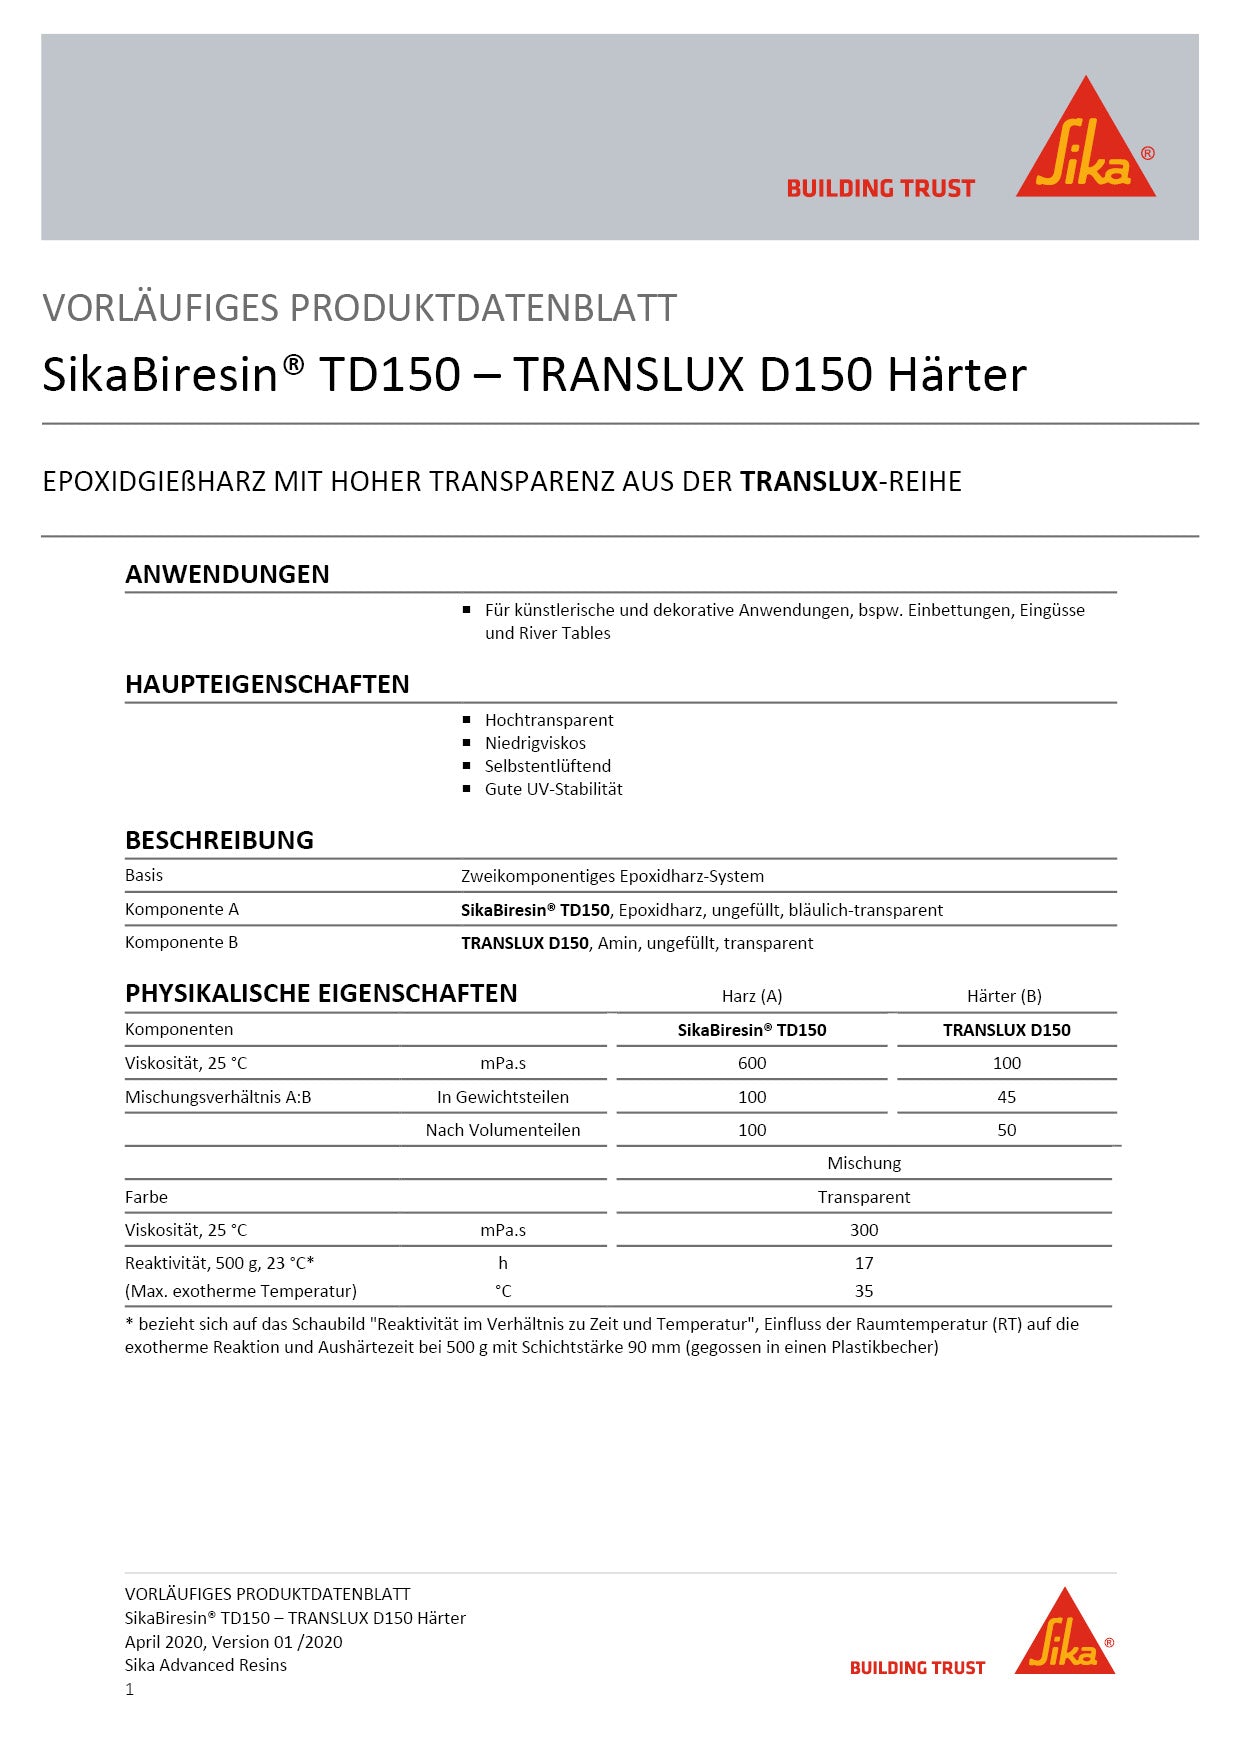 Biresin Translux D150 (Harz + Härter) 10kg